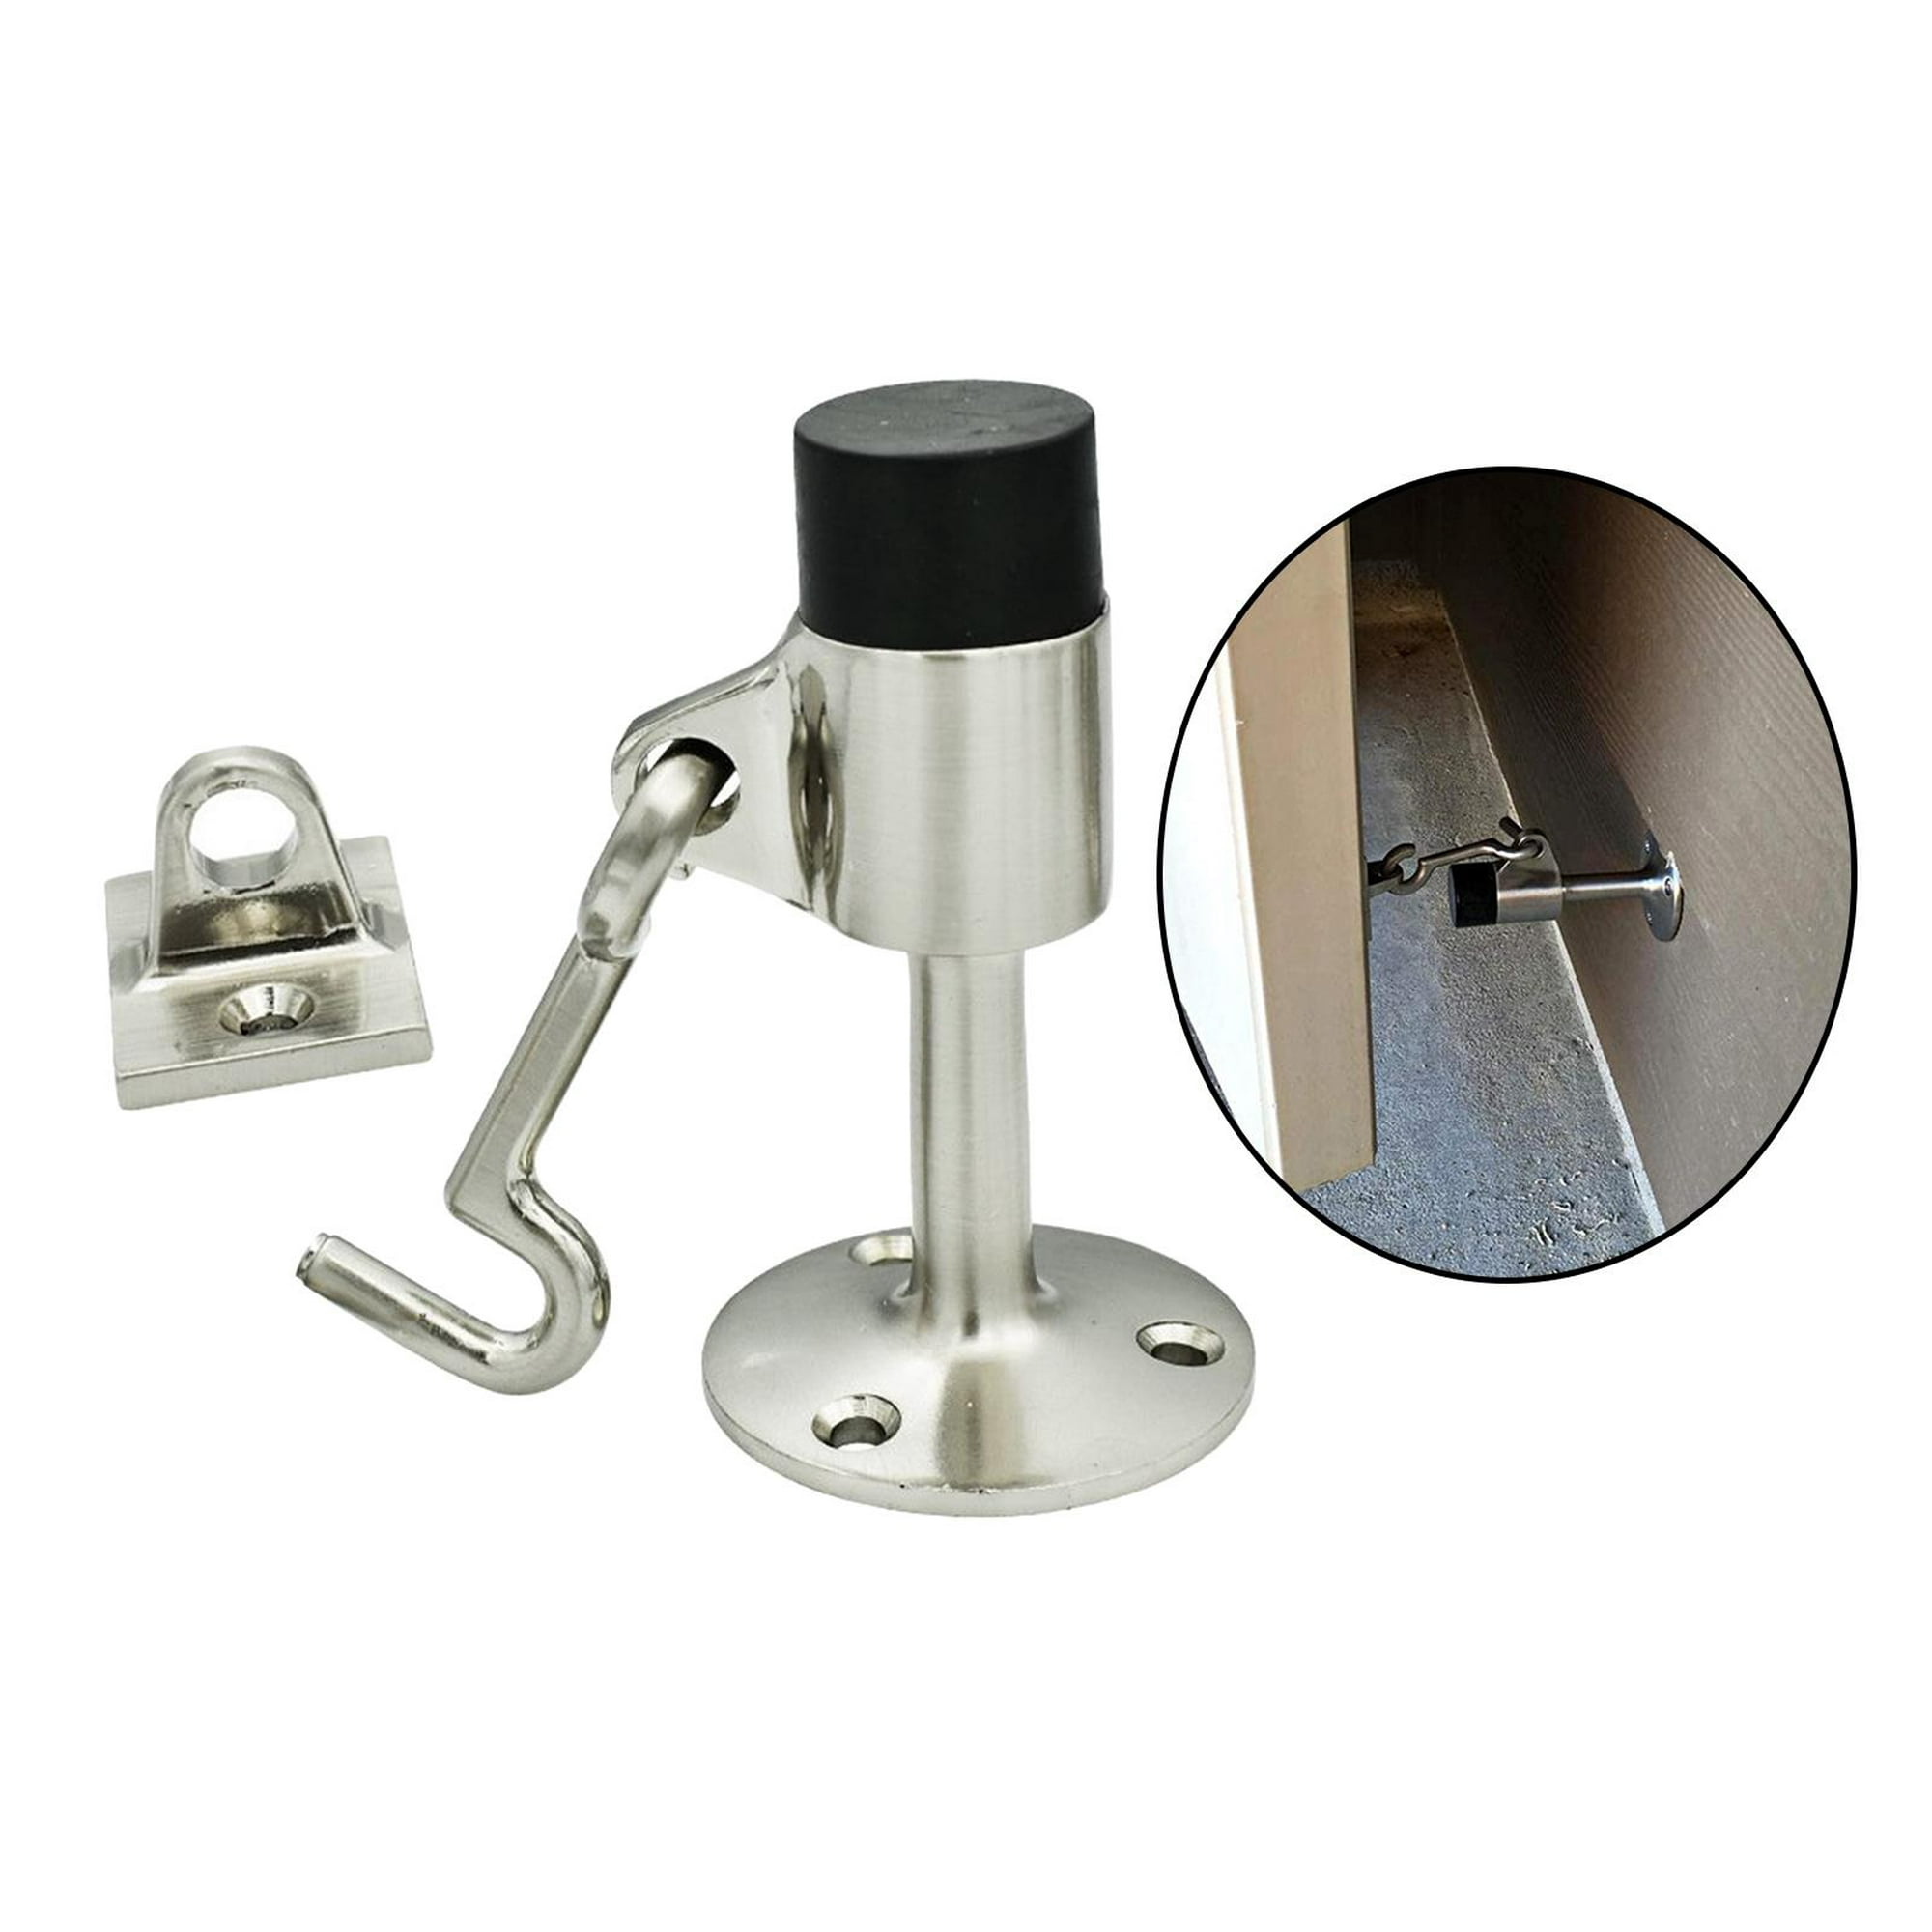  n/a - Topes de puerta de aleación de zinc accionados con pie  ajustable para puerta de bronce para tope de puerta, accesorios de búfer de  puerta (color: plata) : Productos de